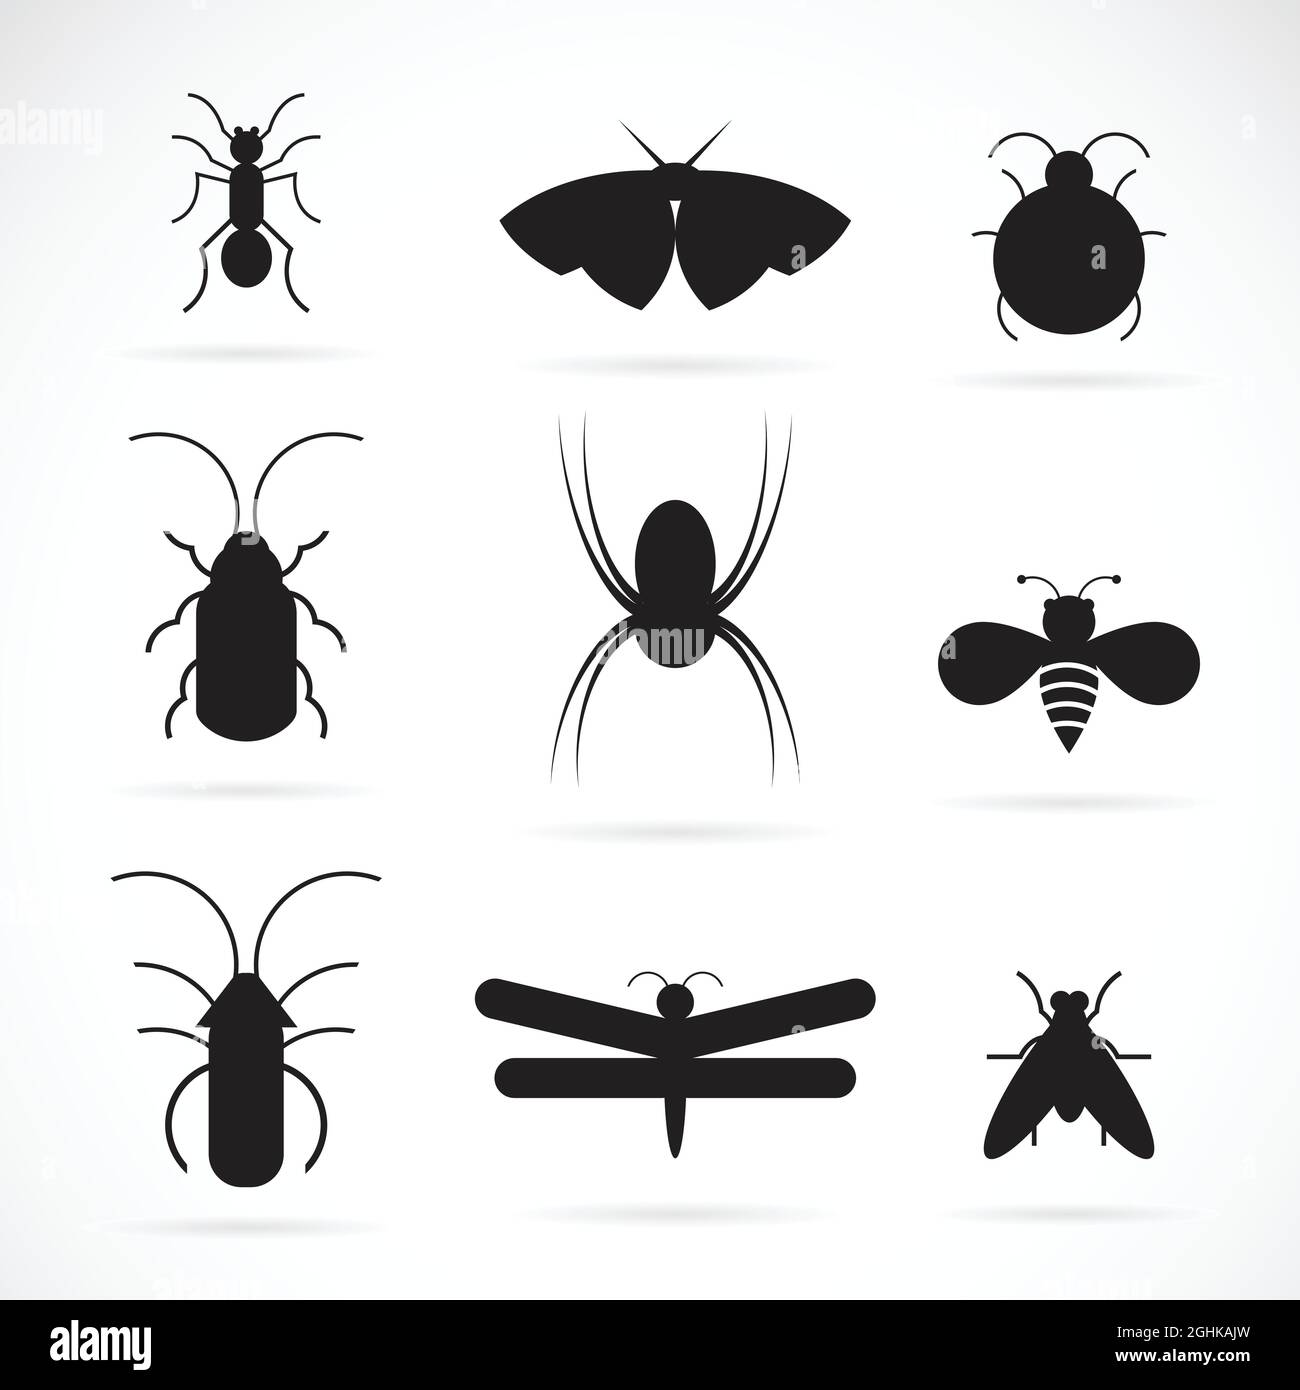 Vecteur de groupe d'insectes sur fond blanc. Insecte. Animal. Icône insectes. Illustration de Vecteur